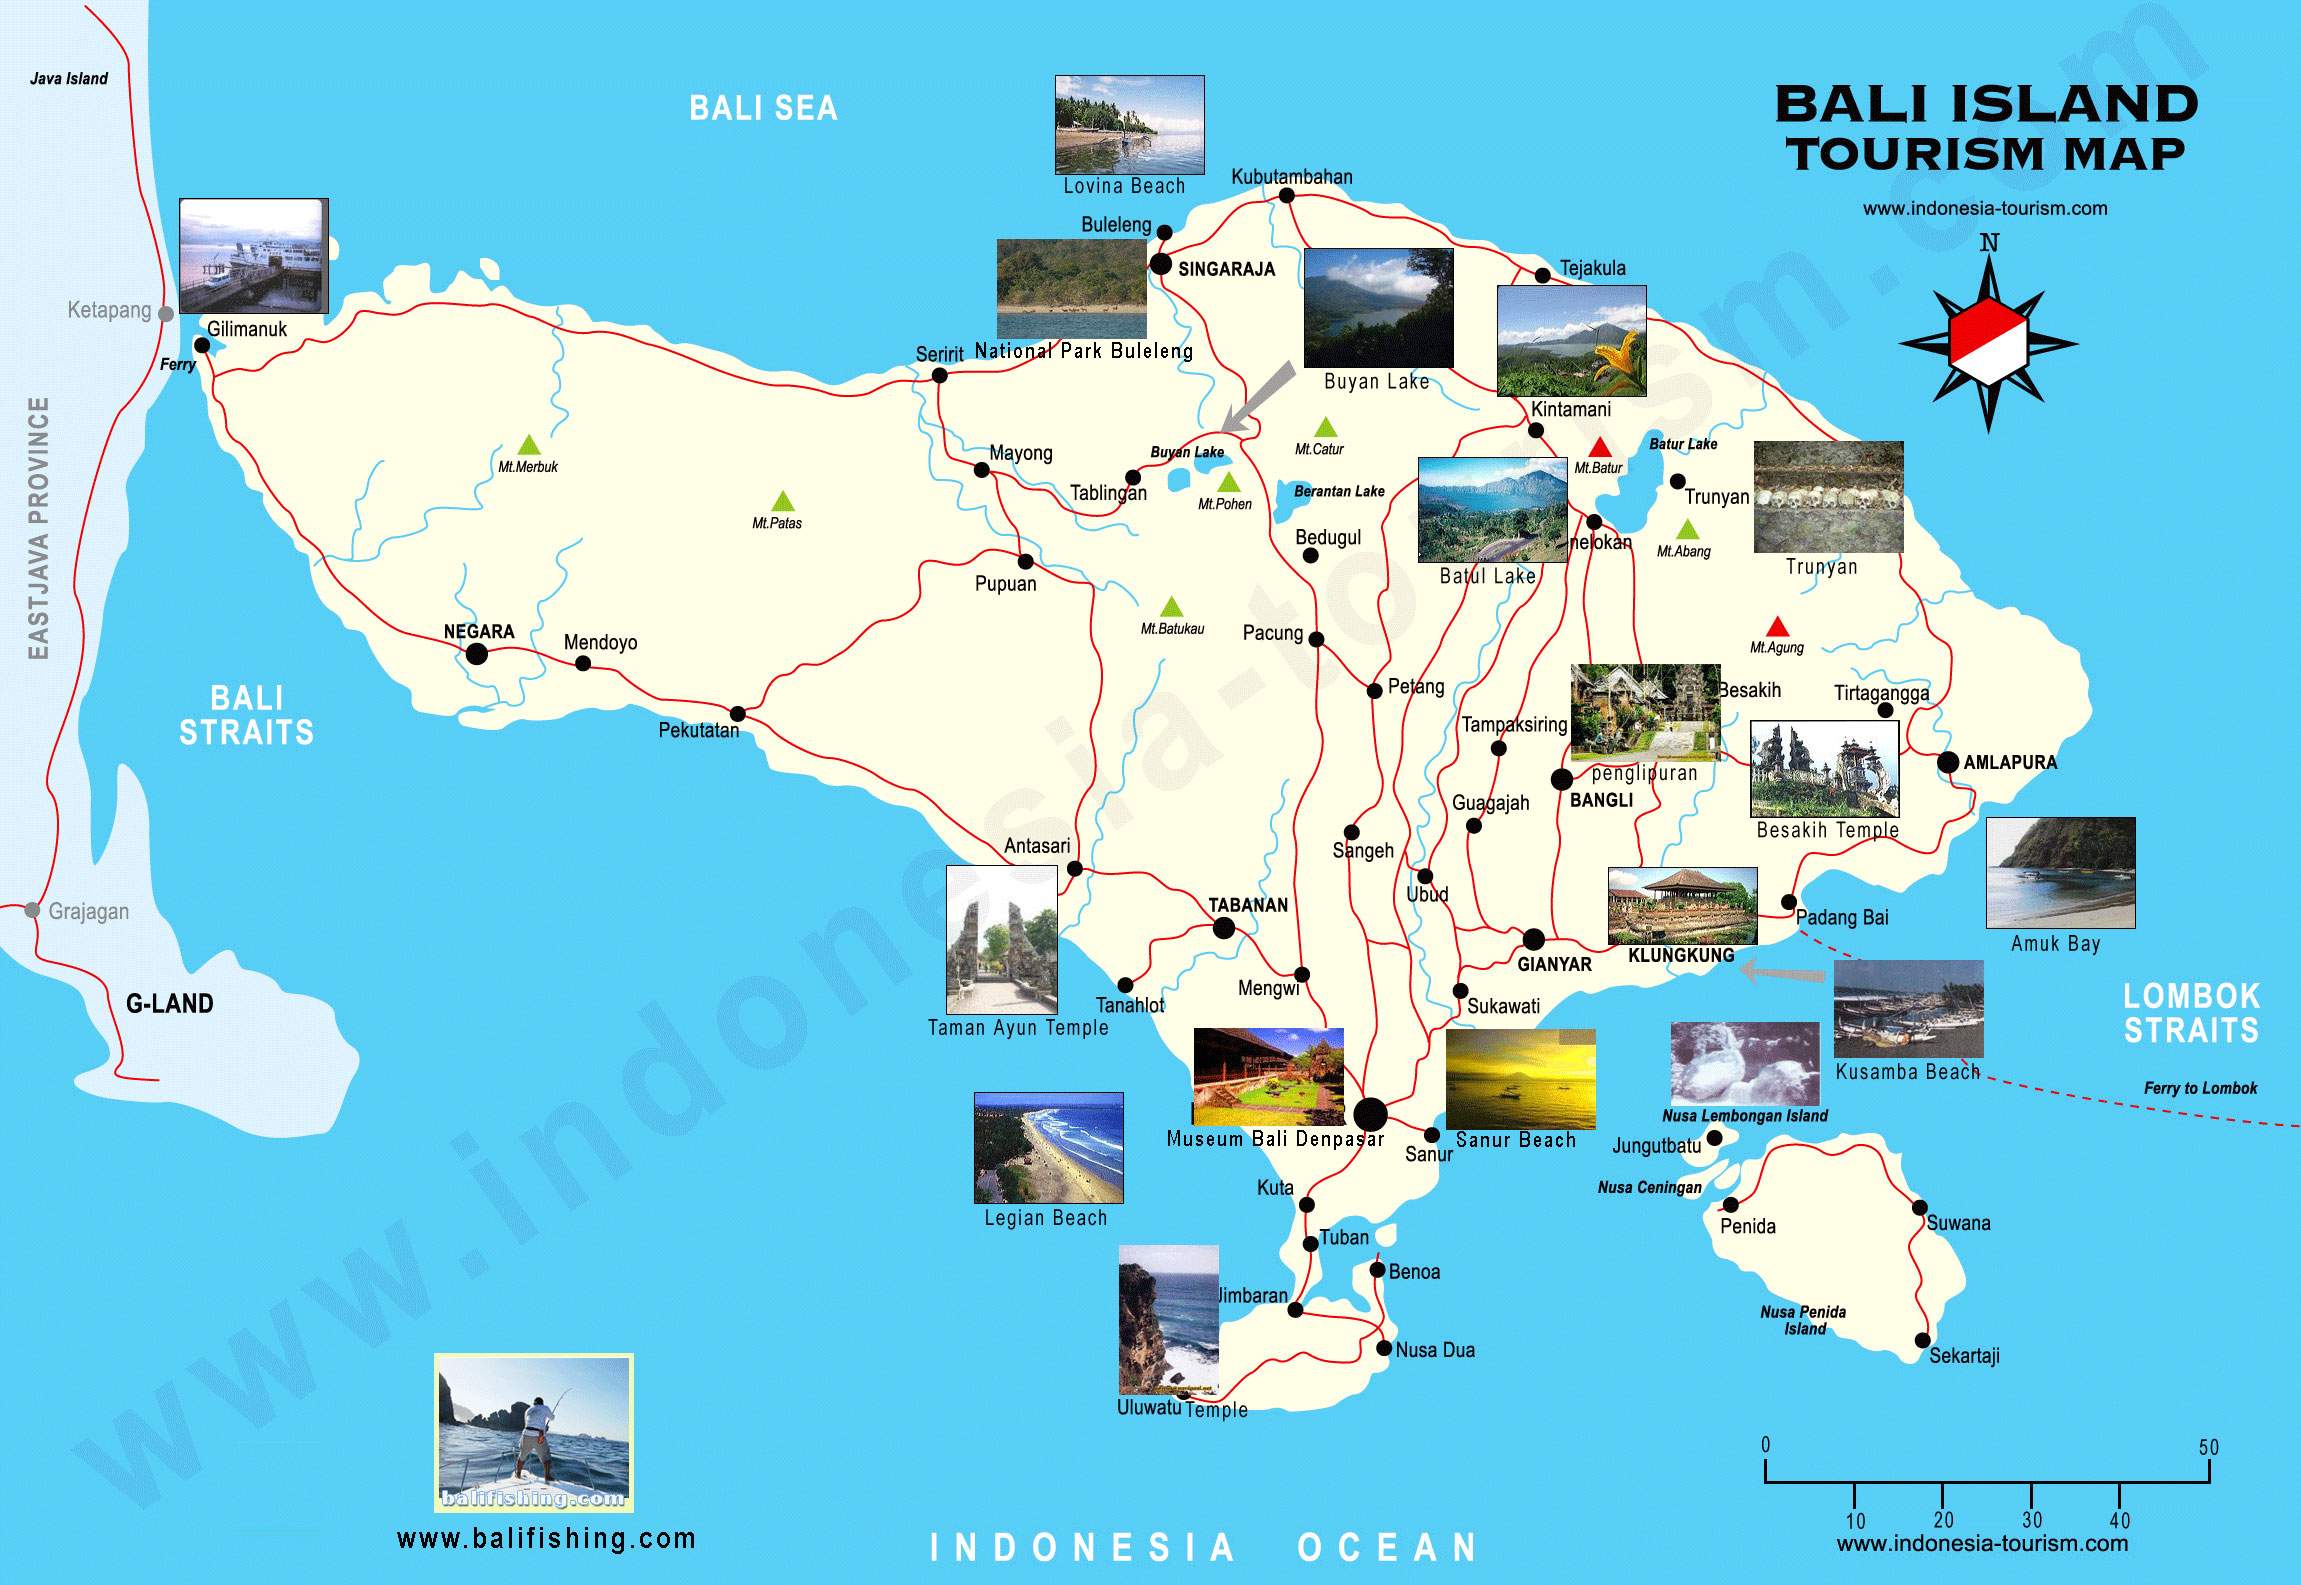 Stadtplan von Bali | Detaillierte gedruckte Karten von Bali, Indonesien